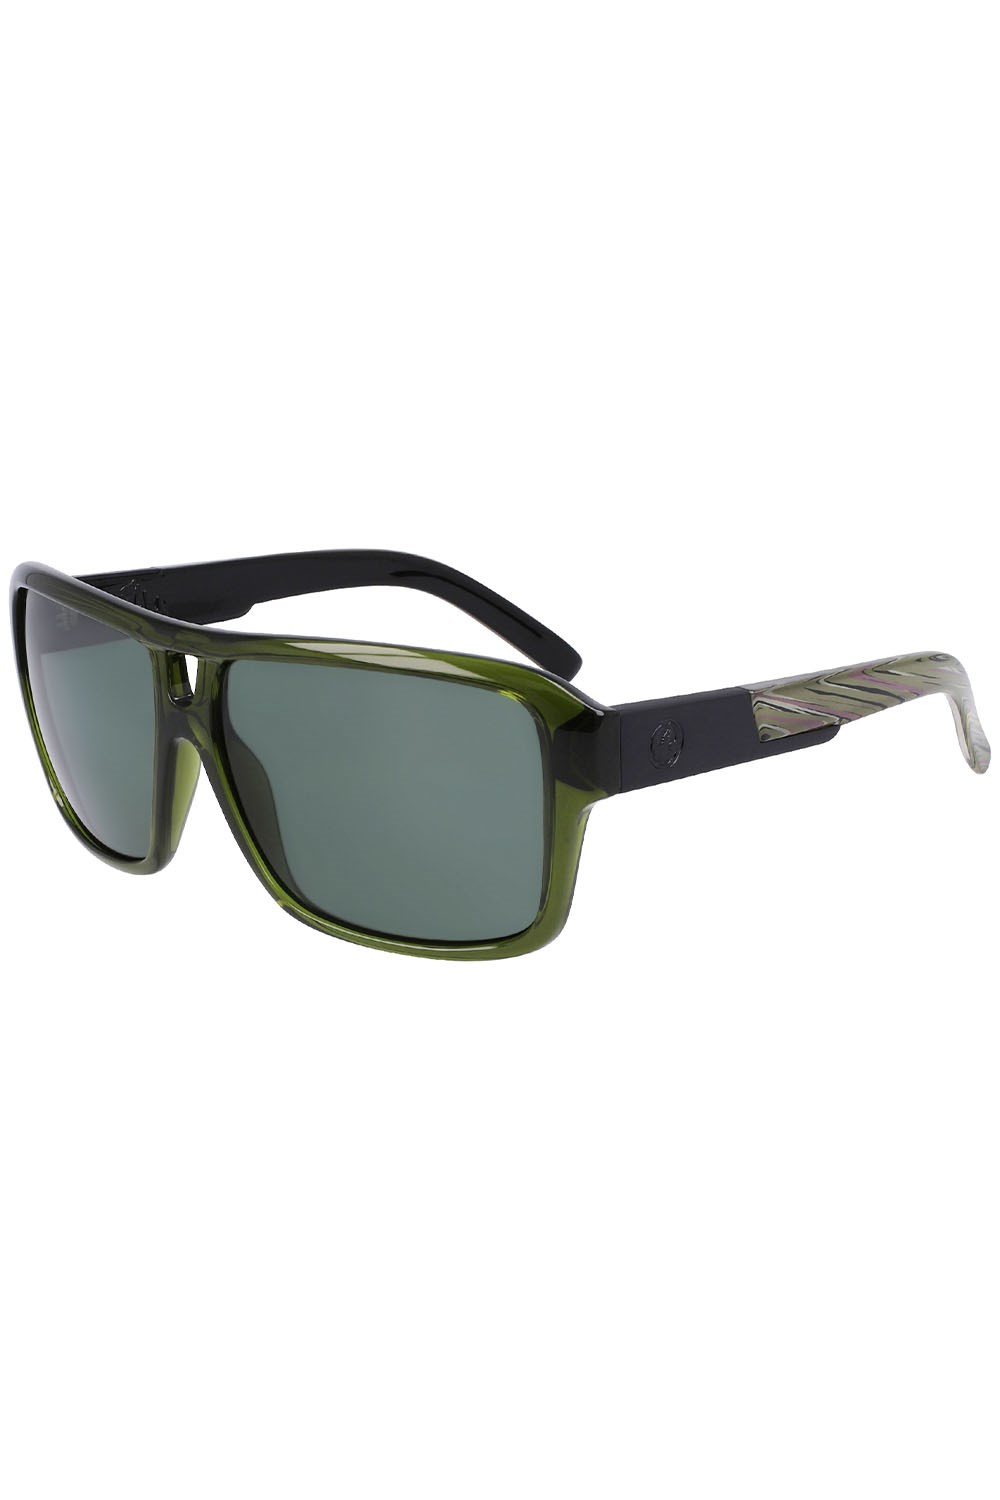 The Jam Unisex Sunglasses -